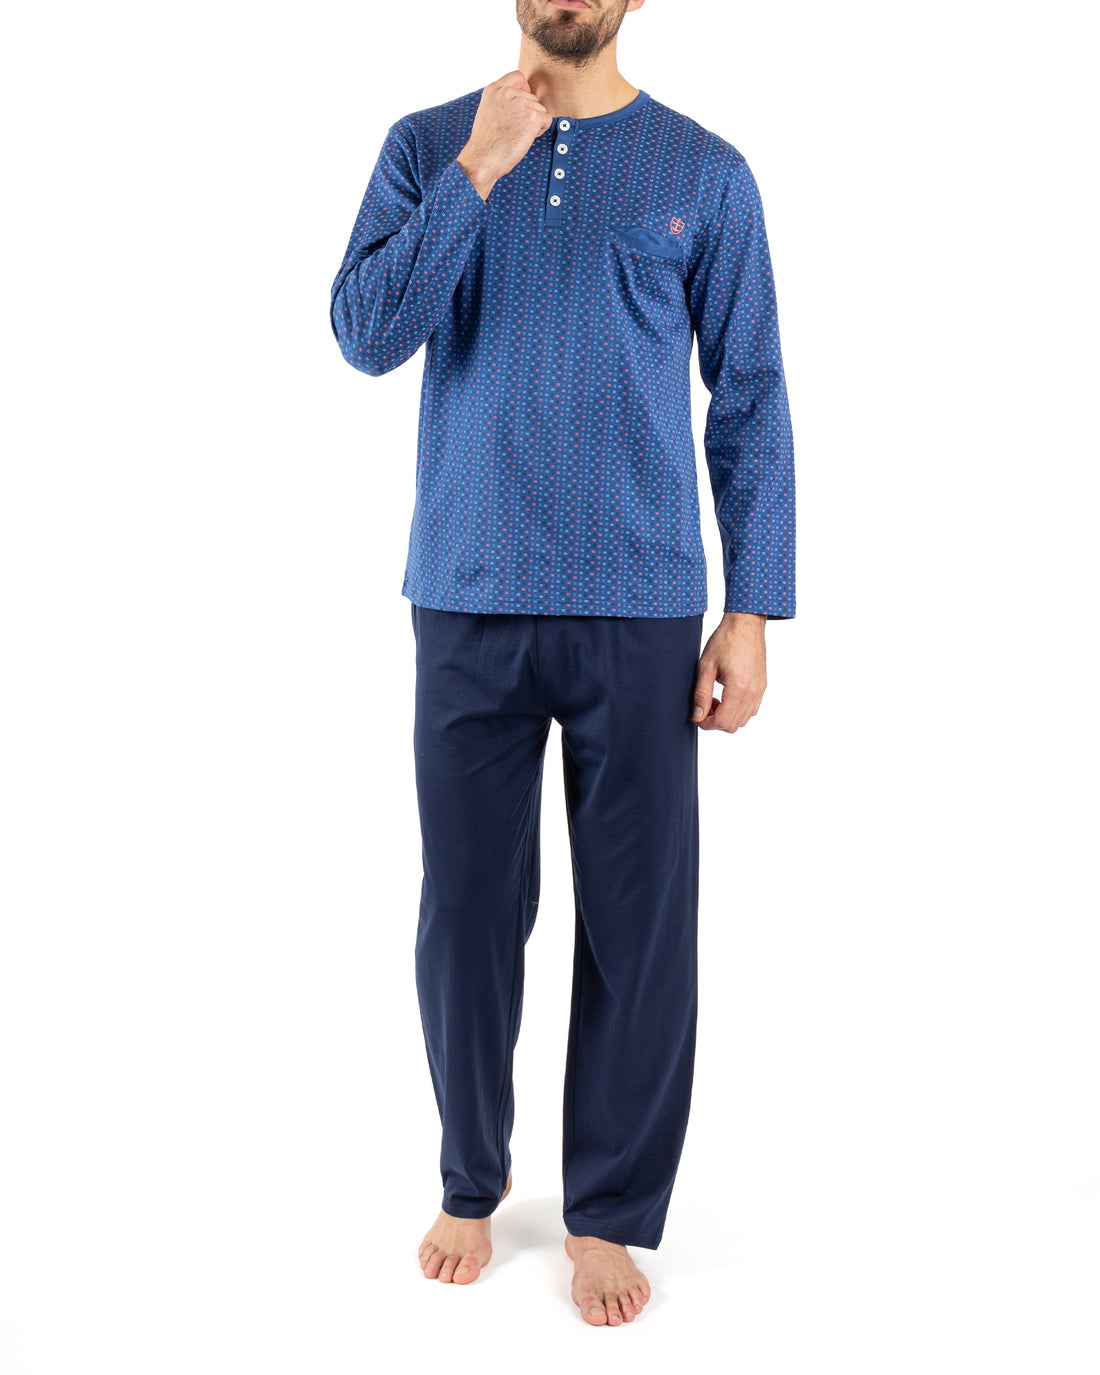 Pyjama Col boutonné en Coton Mercerisé Imprimé BLEU